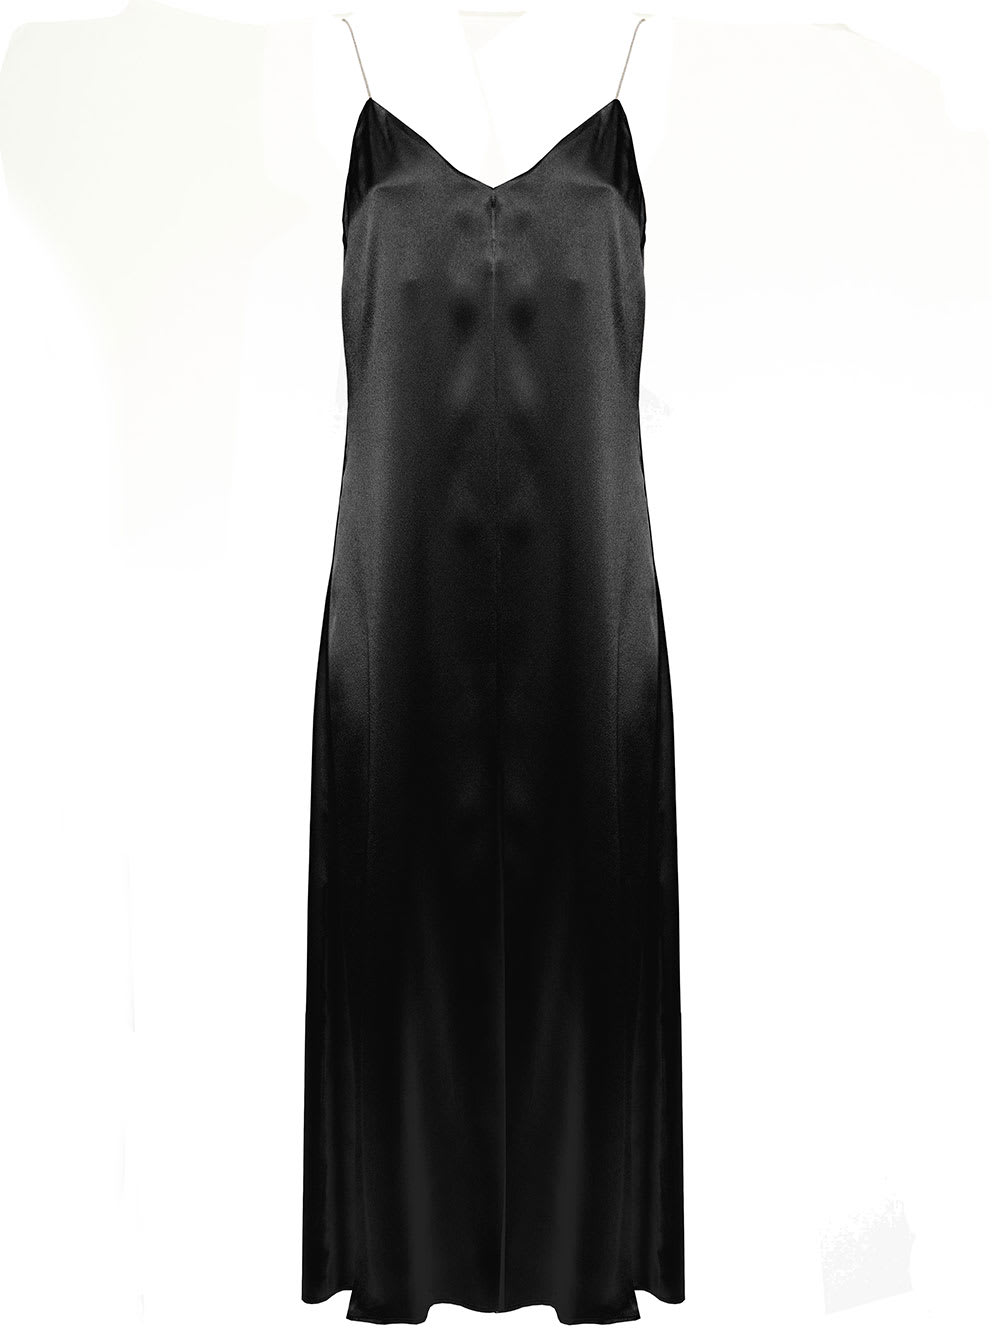 Fabiana Filippi Woman Black Satin Dress